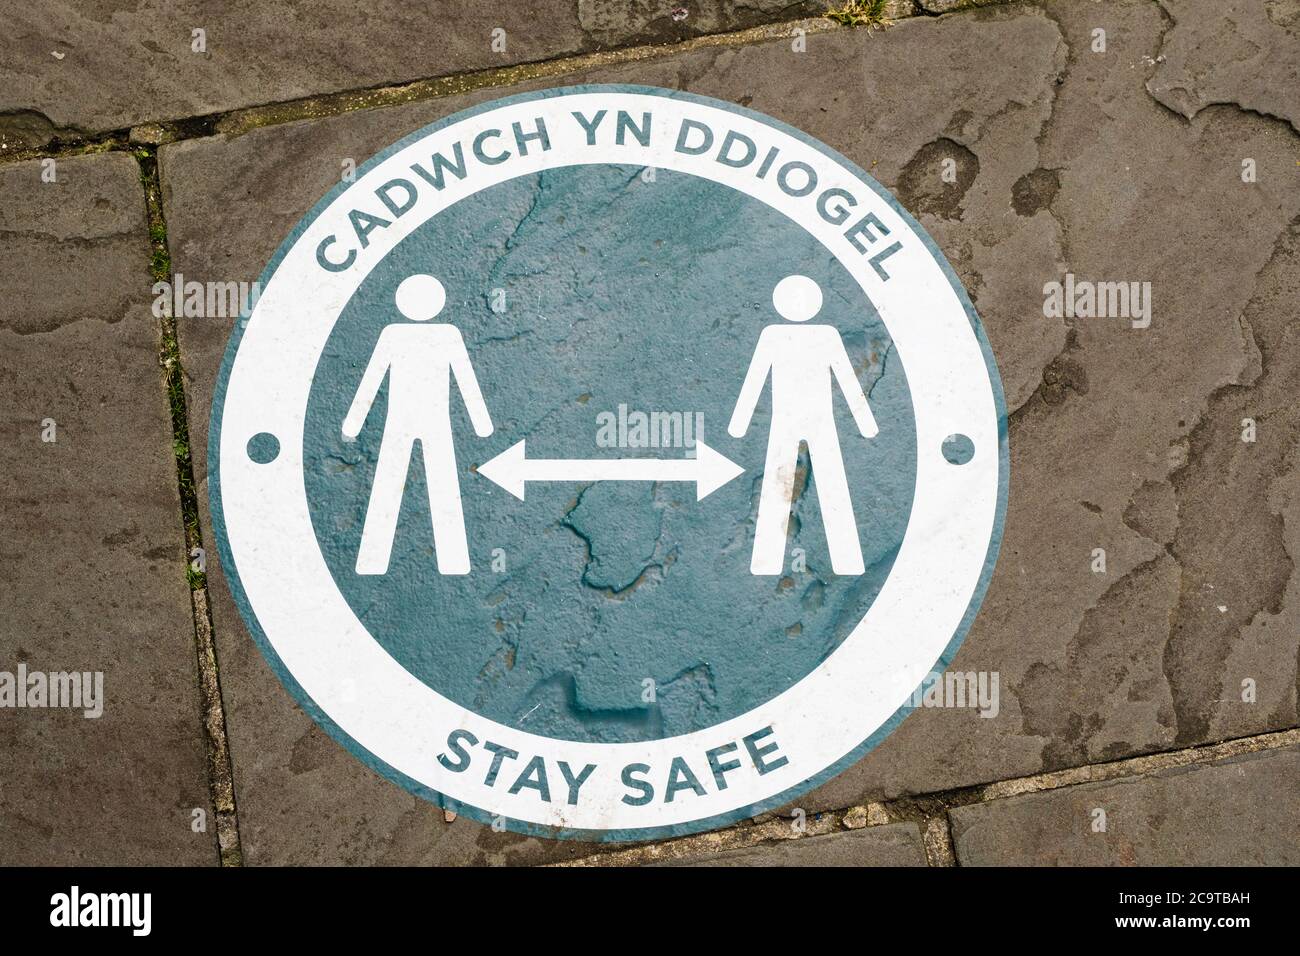 Bilingue Welsh English Stay Safe social signo de distanciamiento para la pandemia de coronavirus Covid-19 en 2020 en un pavimento en la ciudad de Chepstow Gales Reino Unido Gran Bretaña Foto de stock